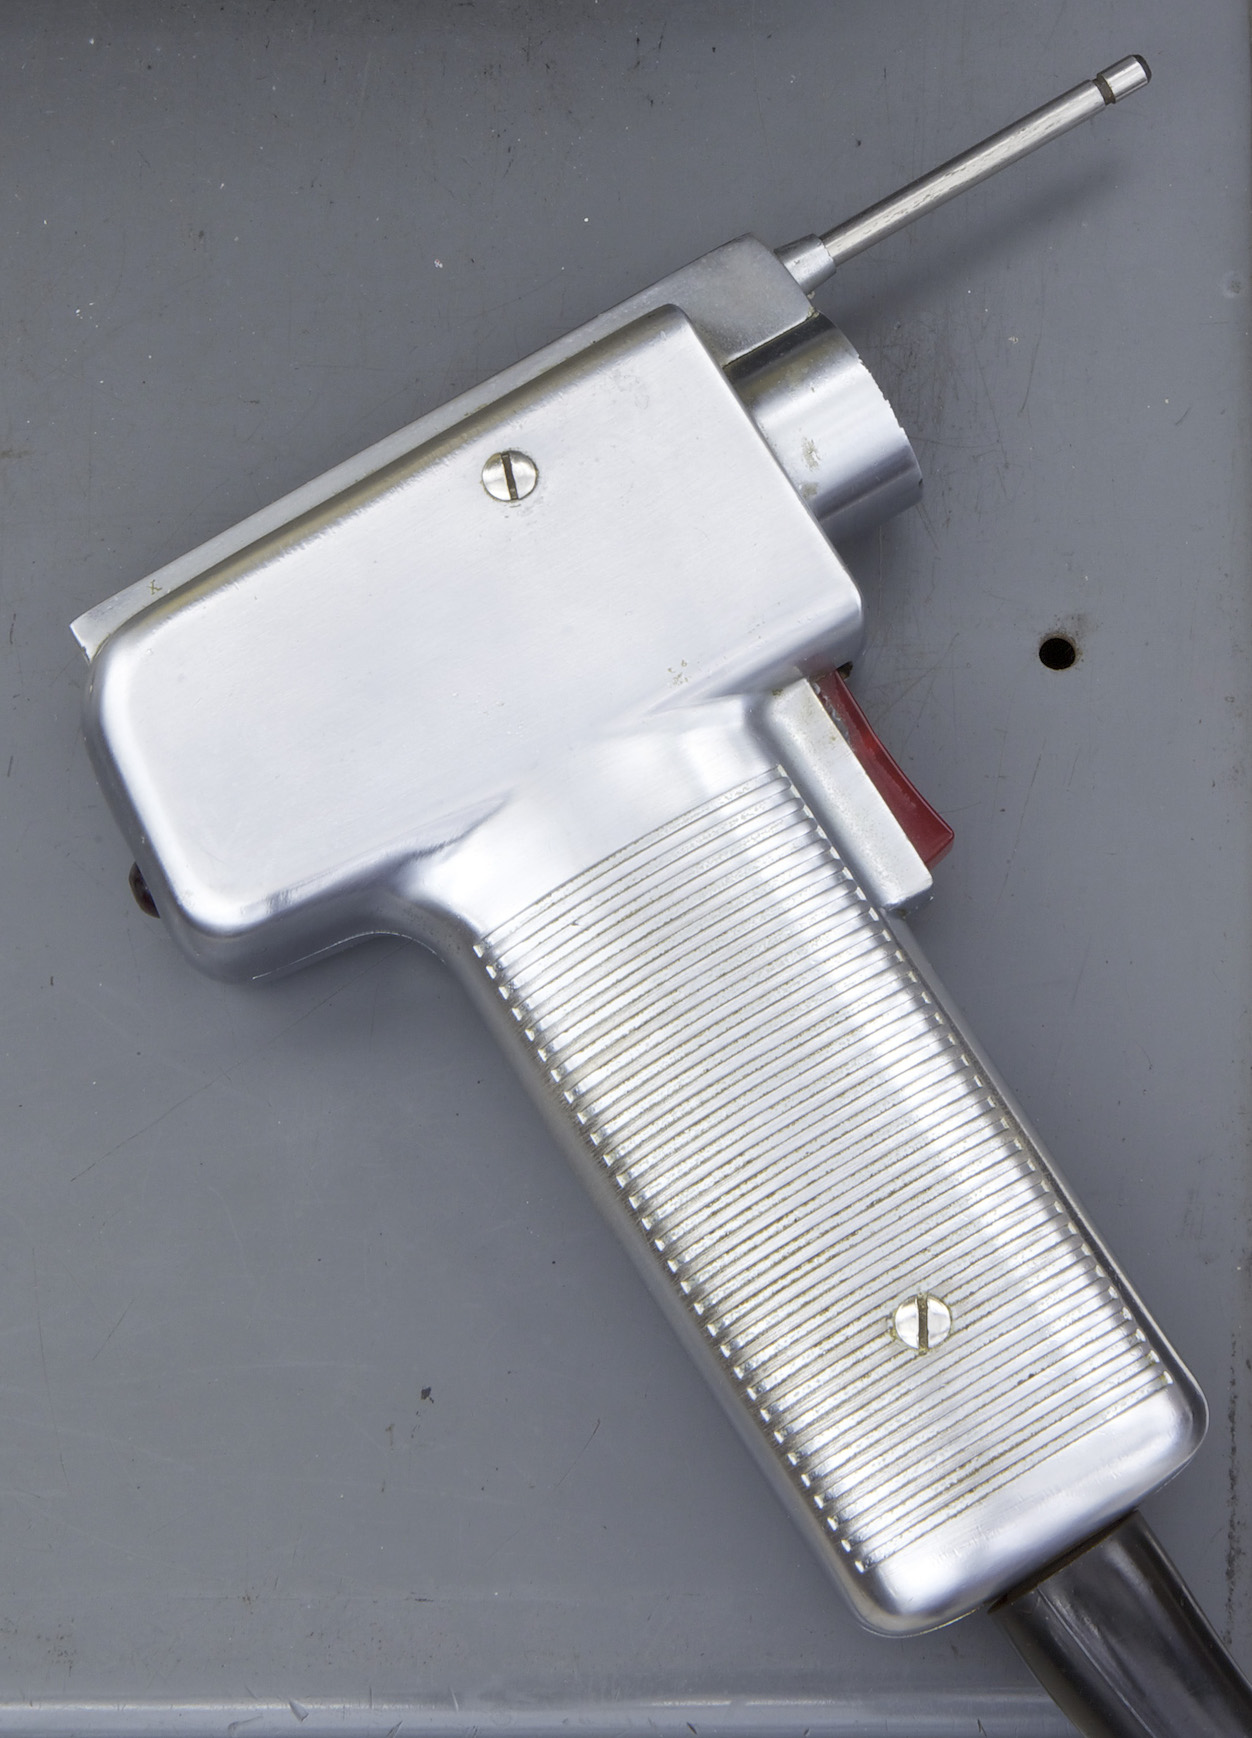 Lightgun – Bild mit freundlicher Genehmigung des Computer History Museums